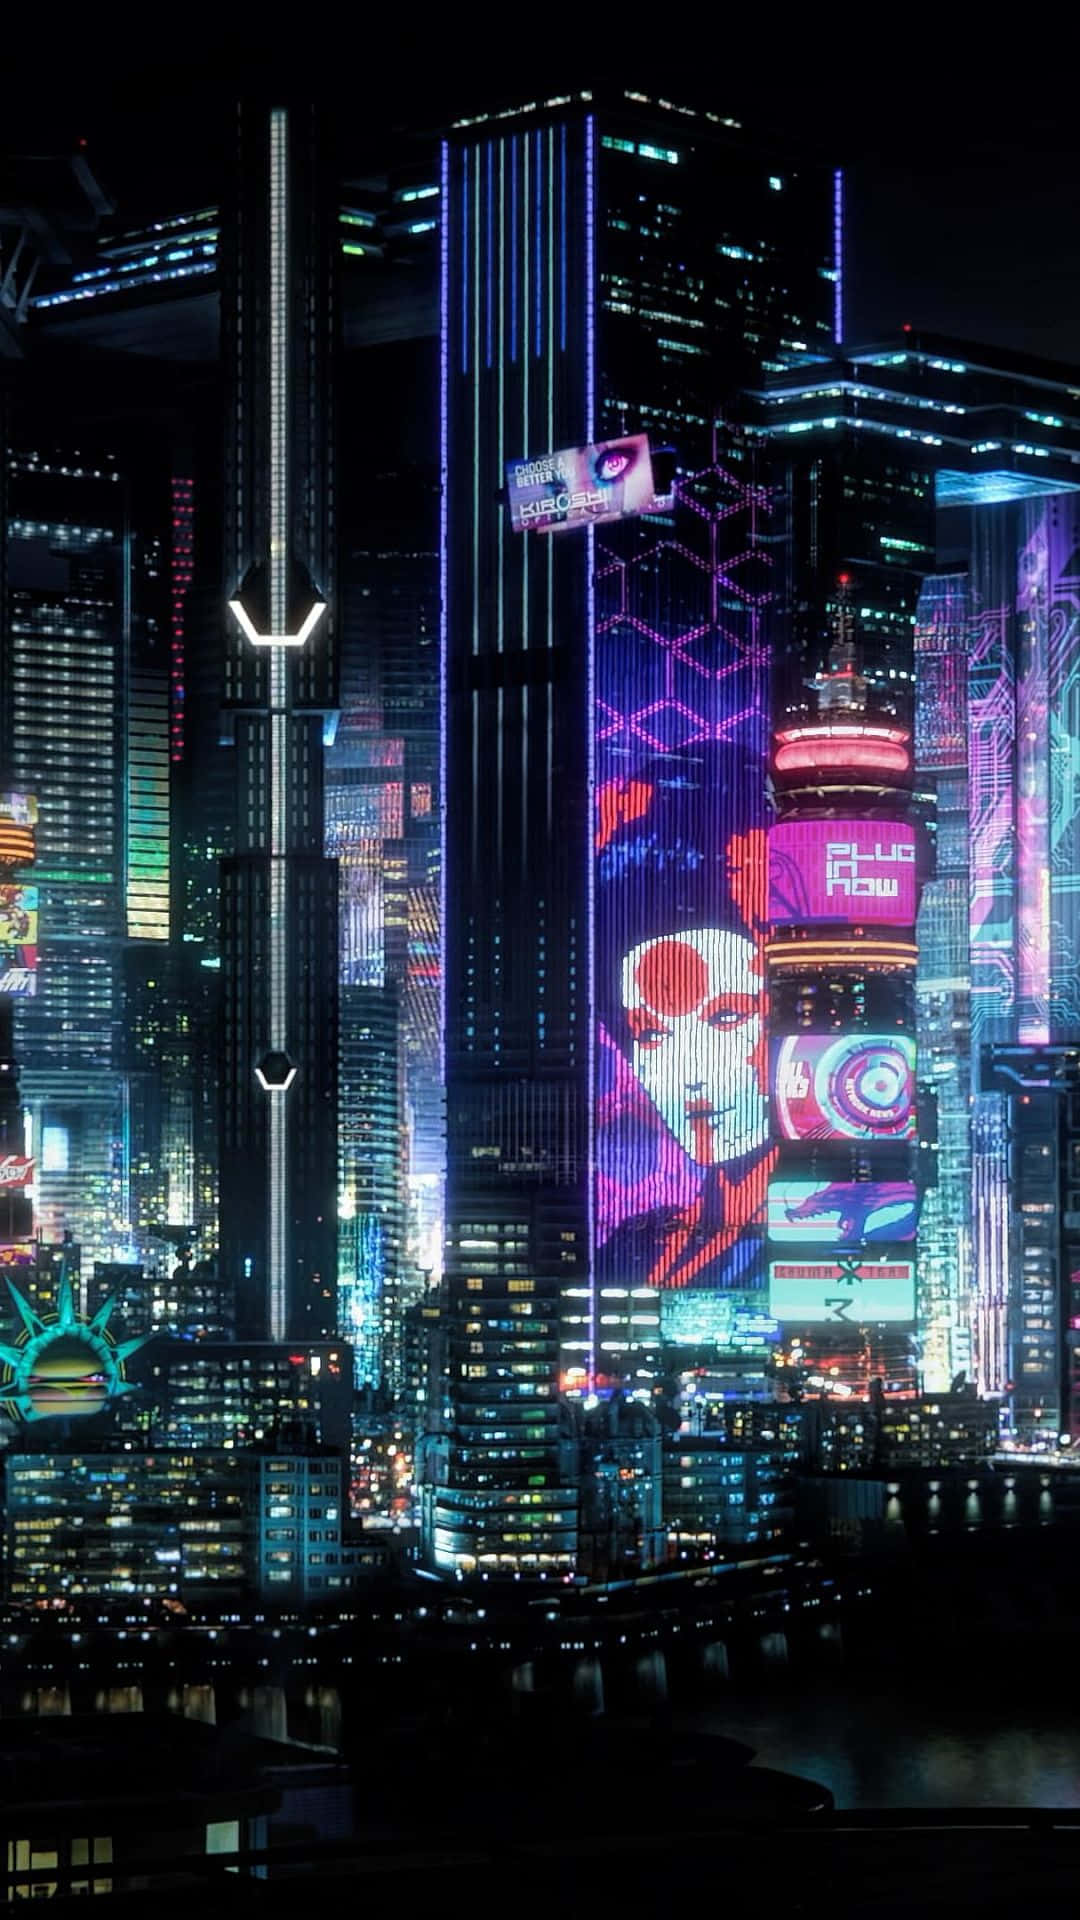 Erkundedie Futuristische Stadt Night City Im Kommenden Spiel Cyberpunk 2077.